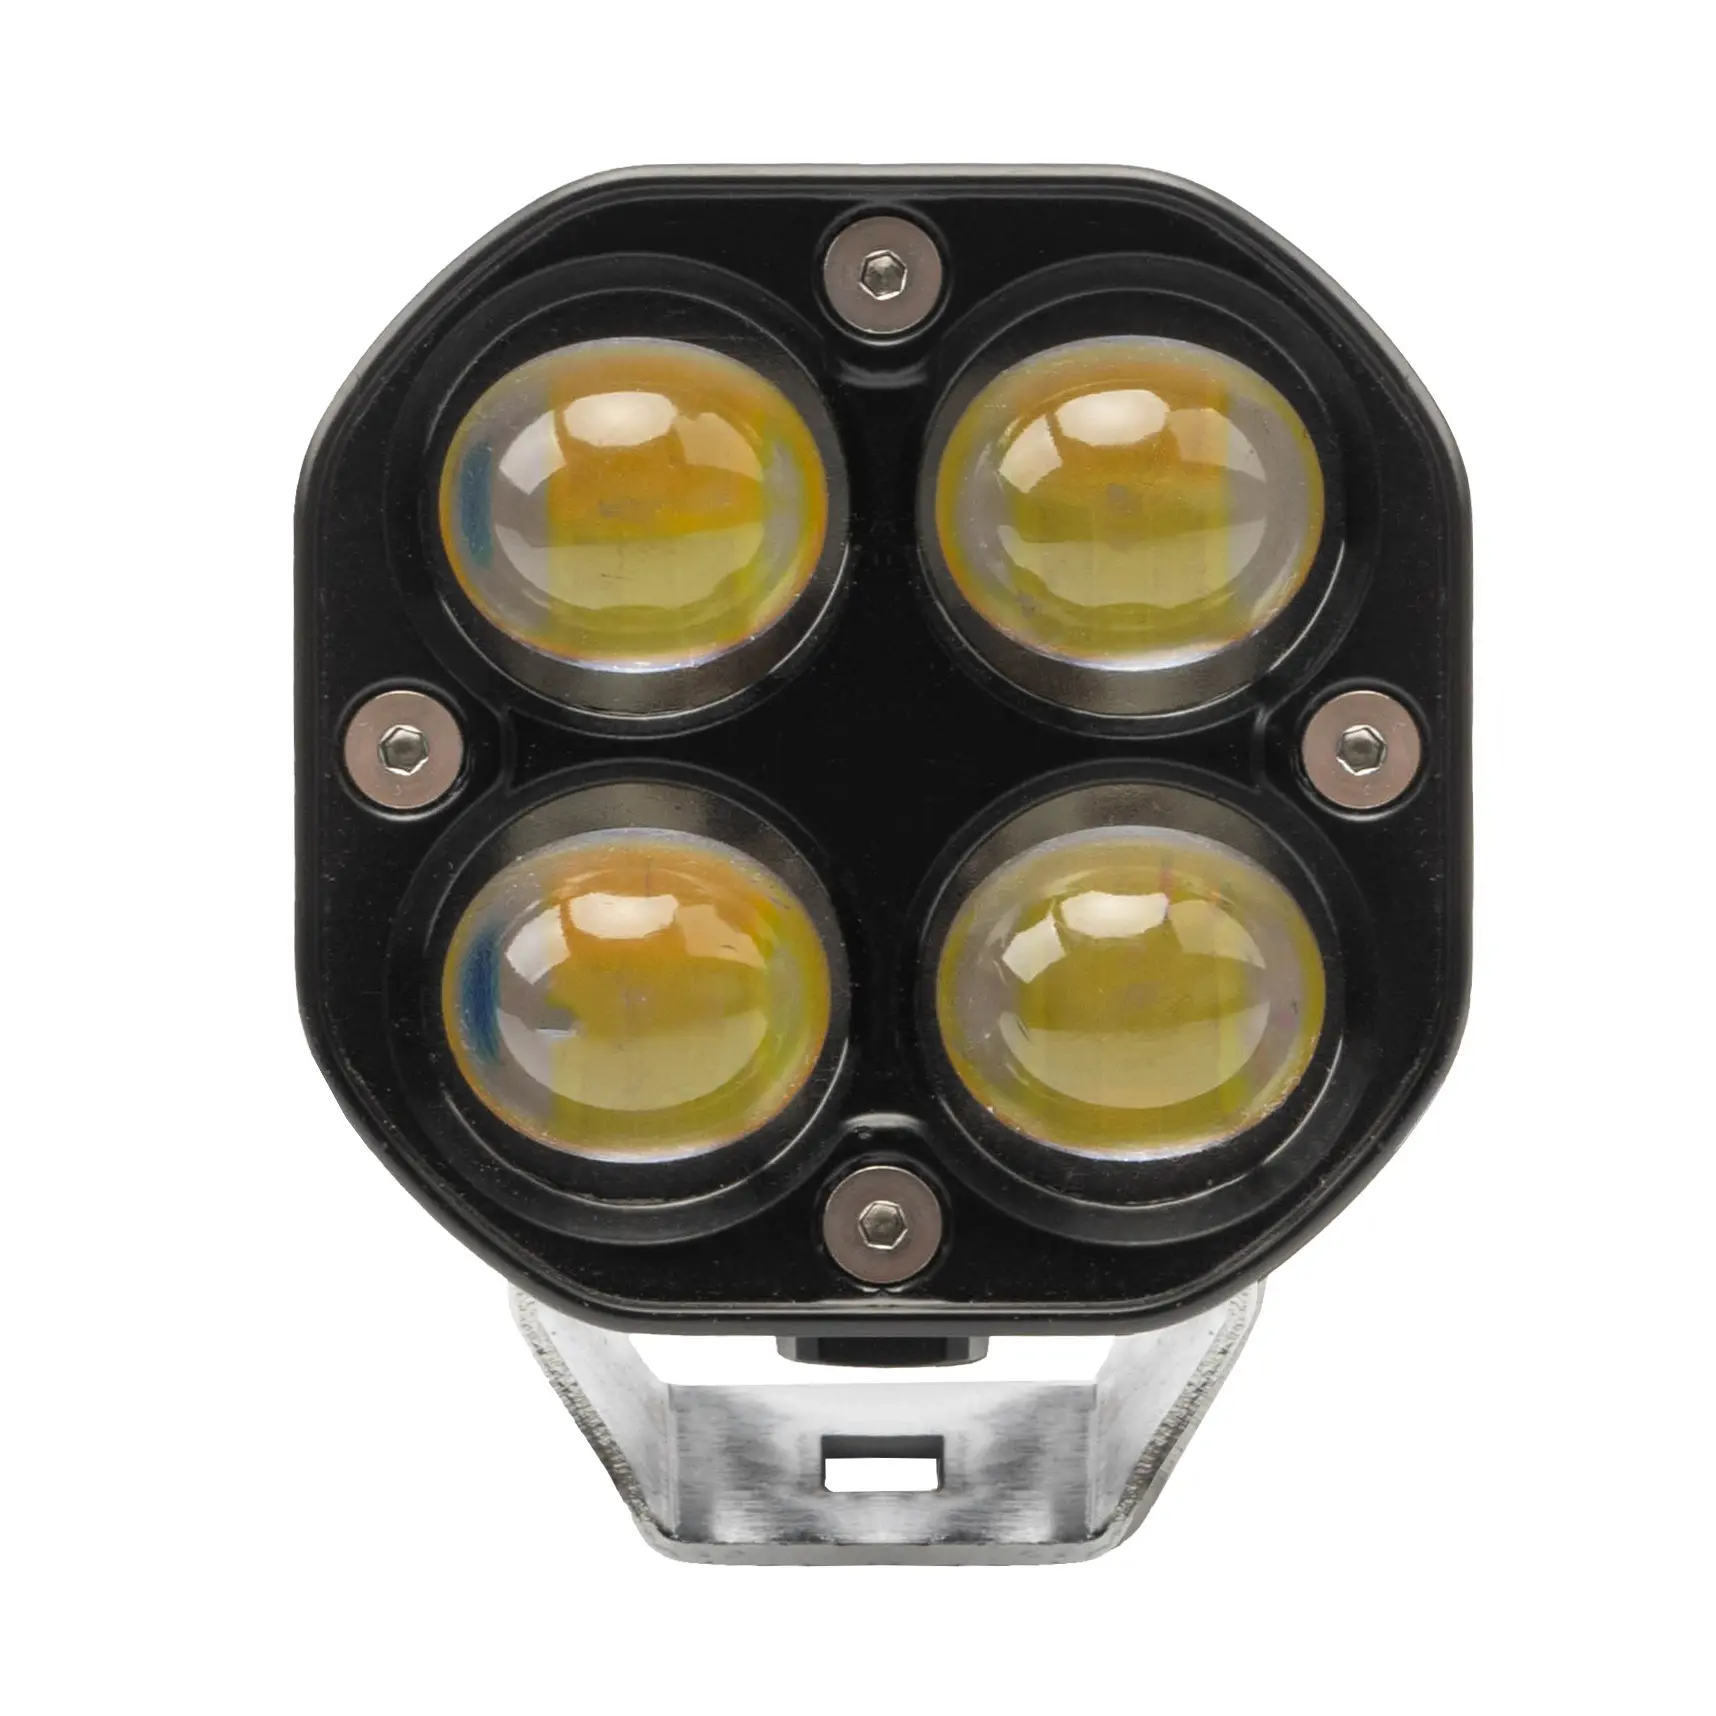 कार सामान एलईडी हेडलाइट सुर्खियों Enteral एलईडी headlamp प्रोजेक्टर लेंस 40W पीले और सफेद चार लेंस सामने भरपूर रोशनी